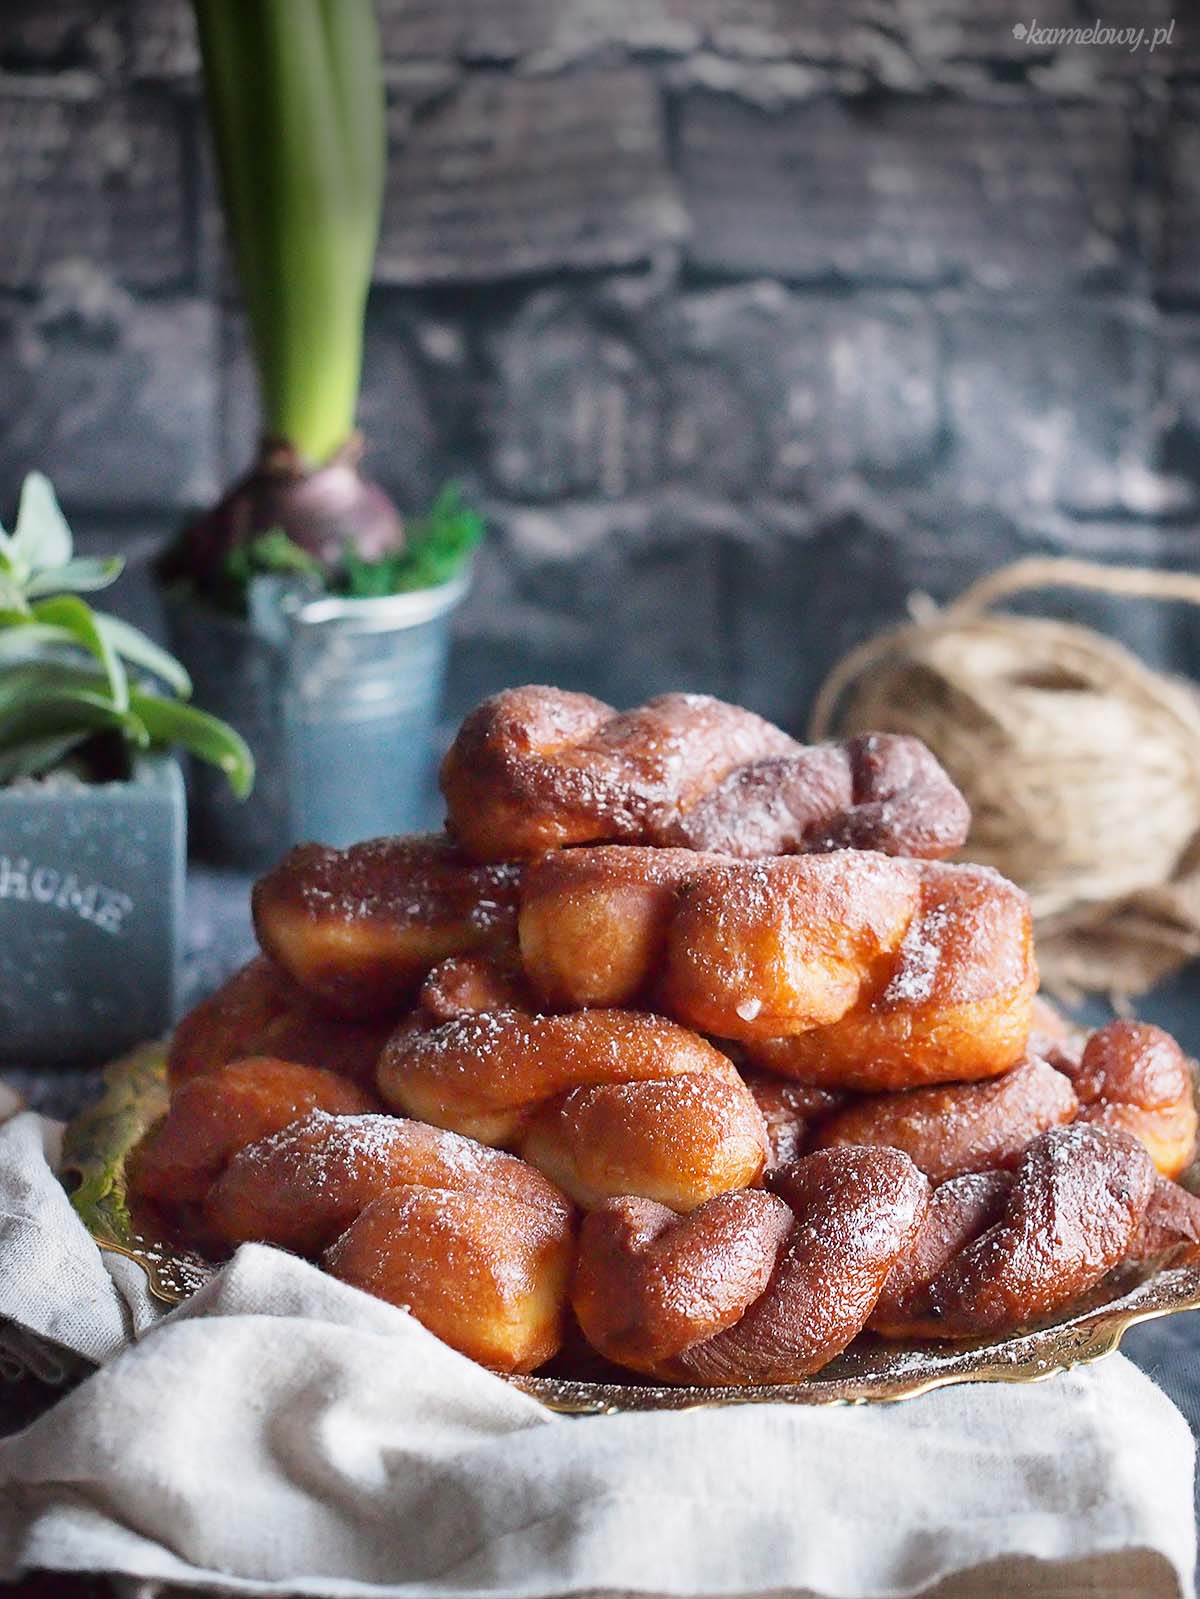 Zakręcone pączki / Twisted doughnuts blog kulinarny